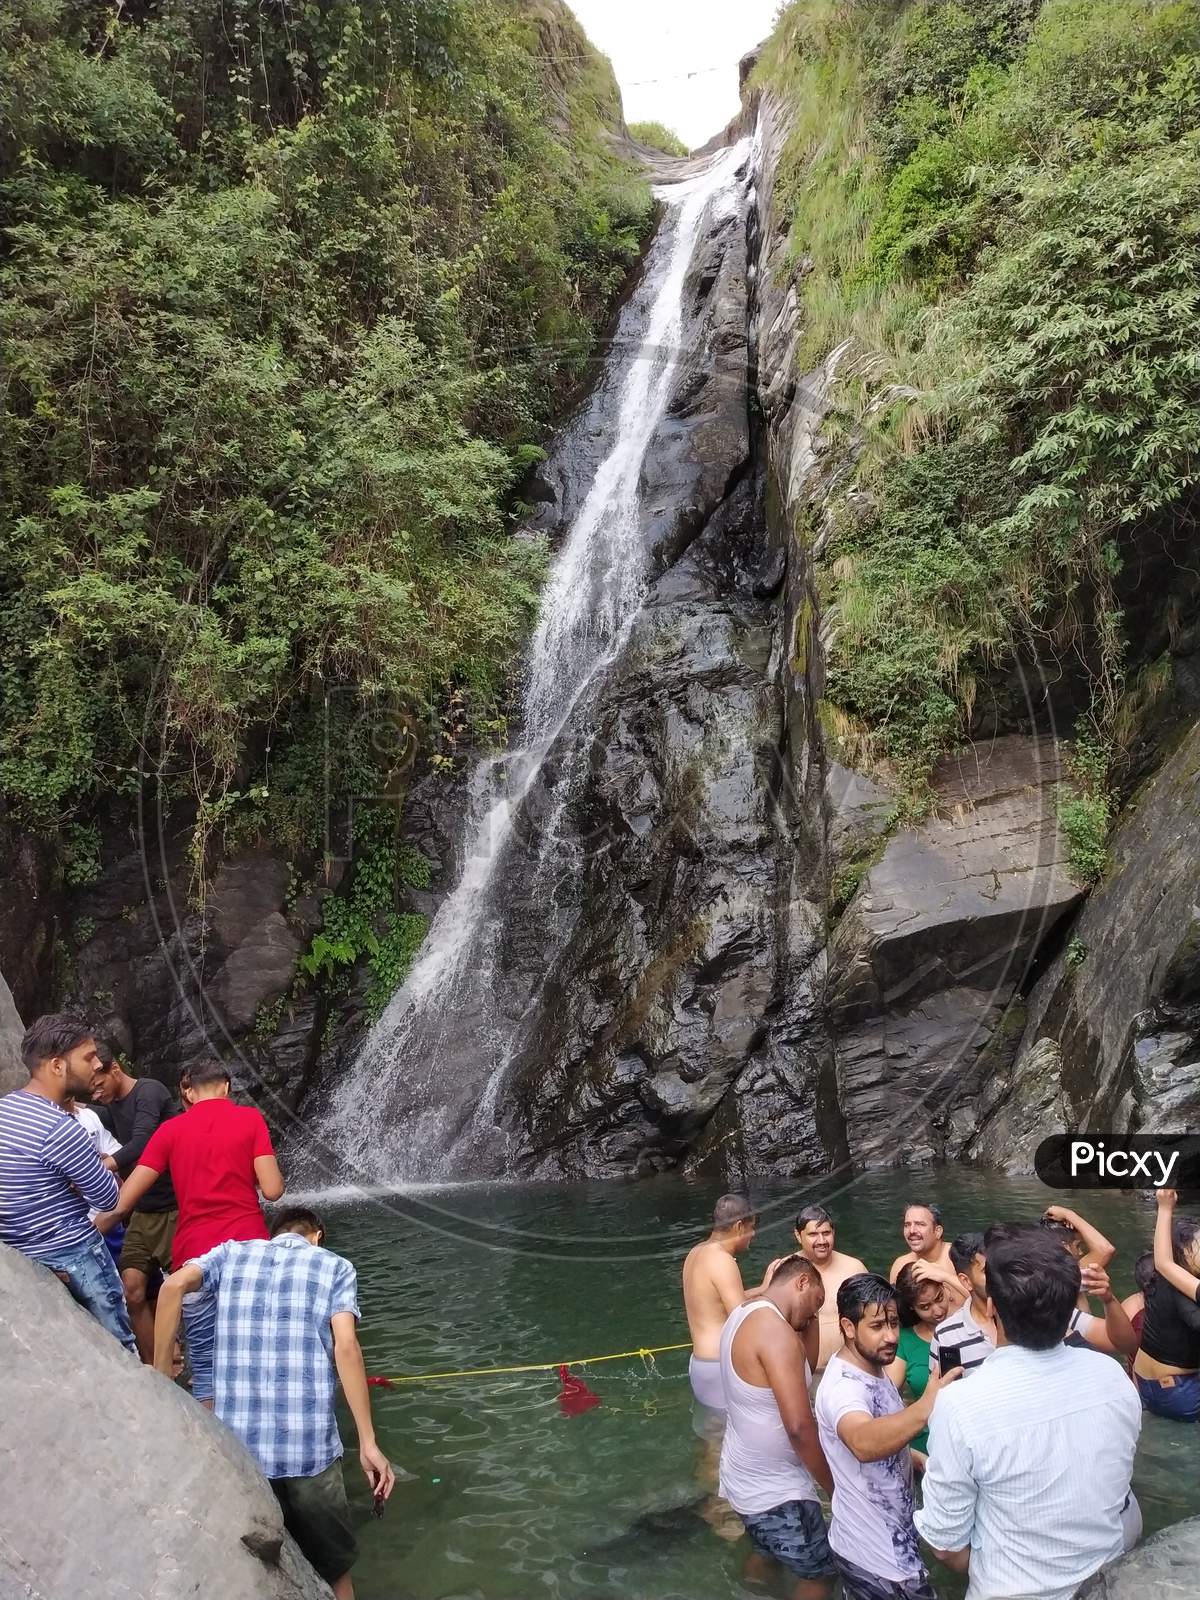 peoples enjoying in beautiful waterfall in India Himalayas mountains Dharamshala Mcleodganj triund Himachal Pradesh